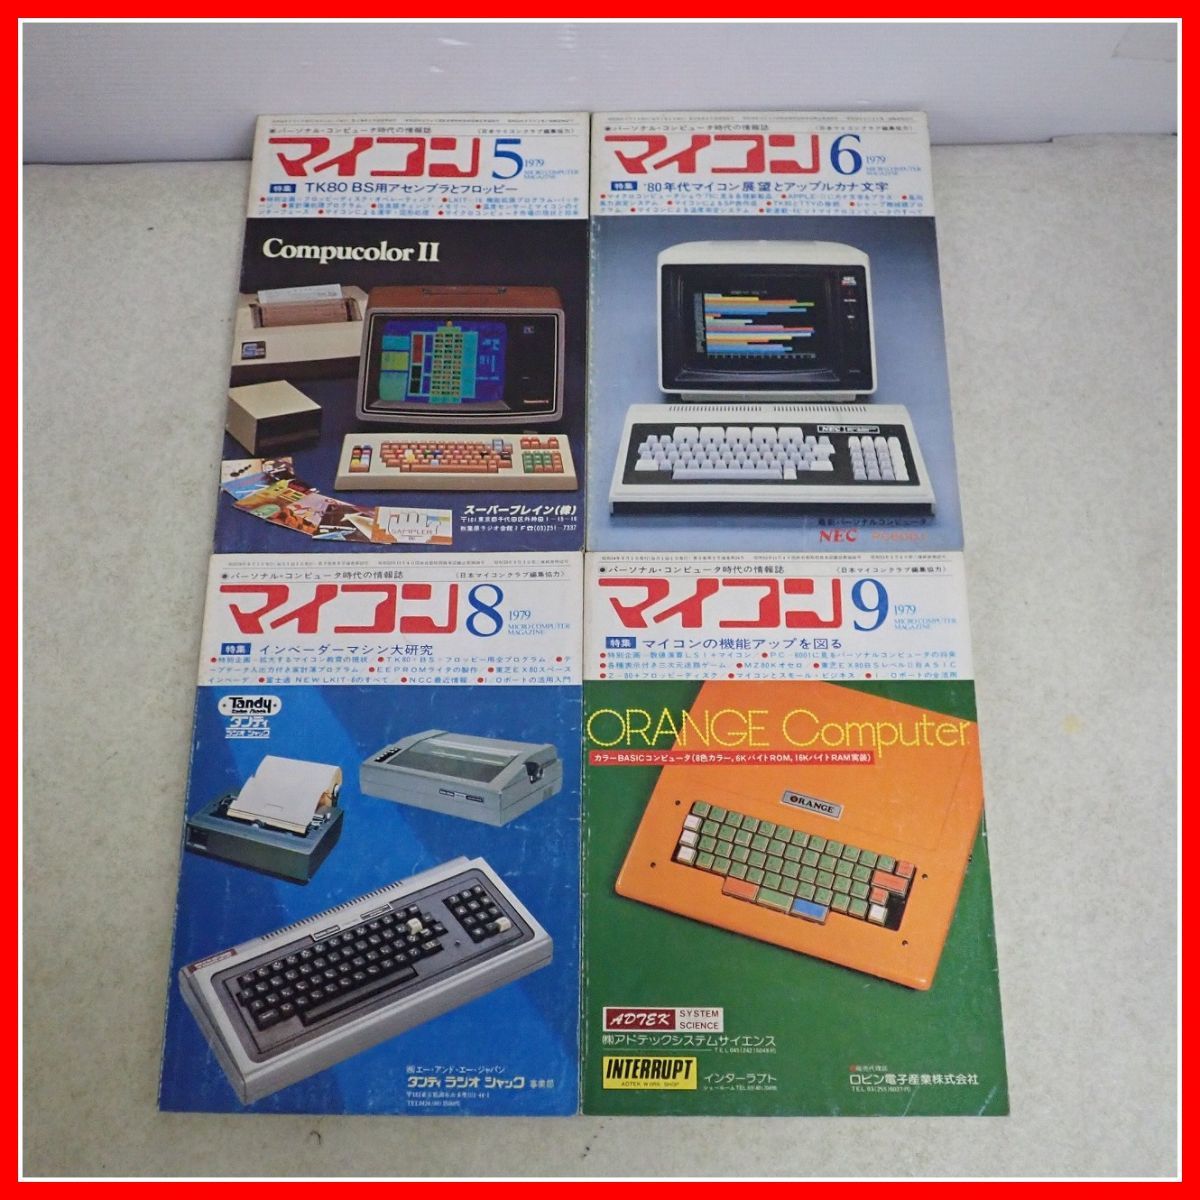 * журнал microcomputer 1979 год Showa 54 год продажа минут совместно 10 шт. комплект радиоволны газета фирма компьютер относящийся [20